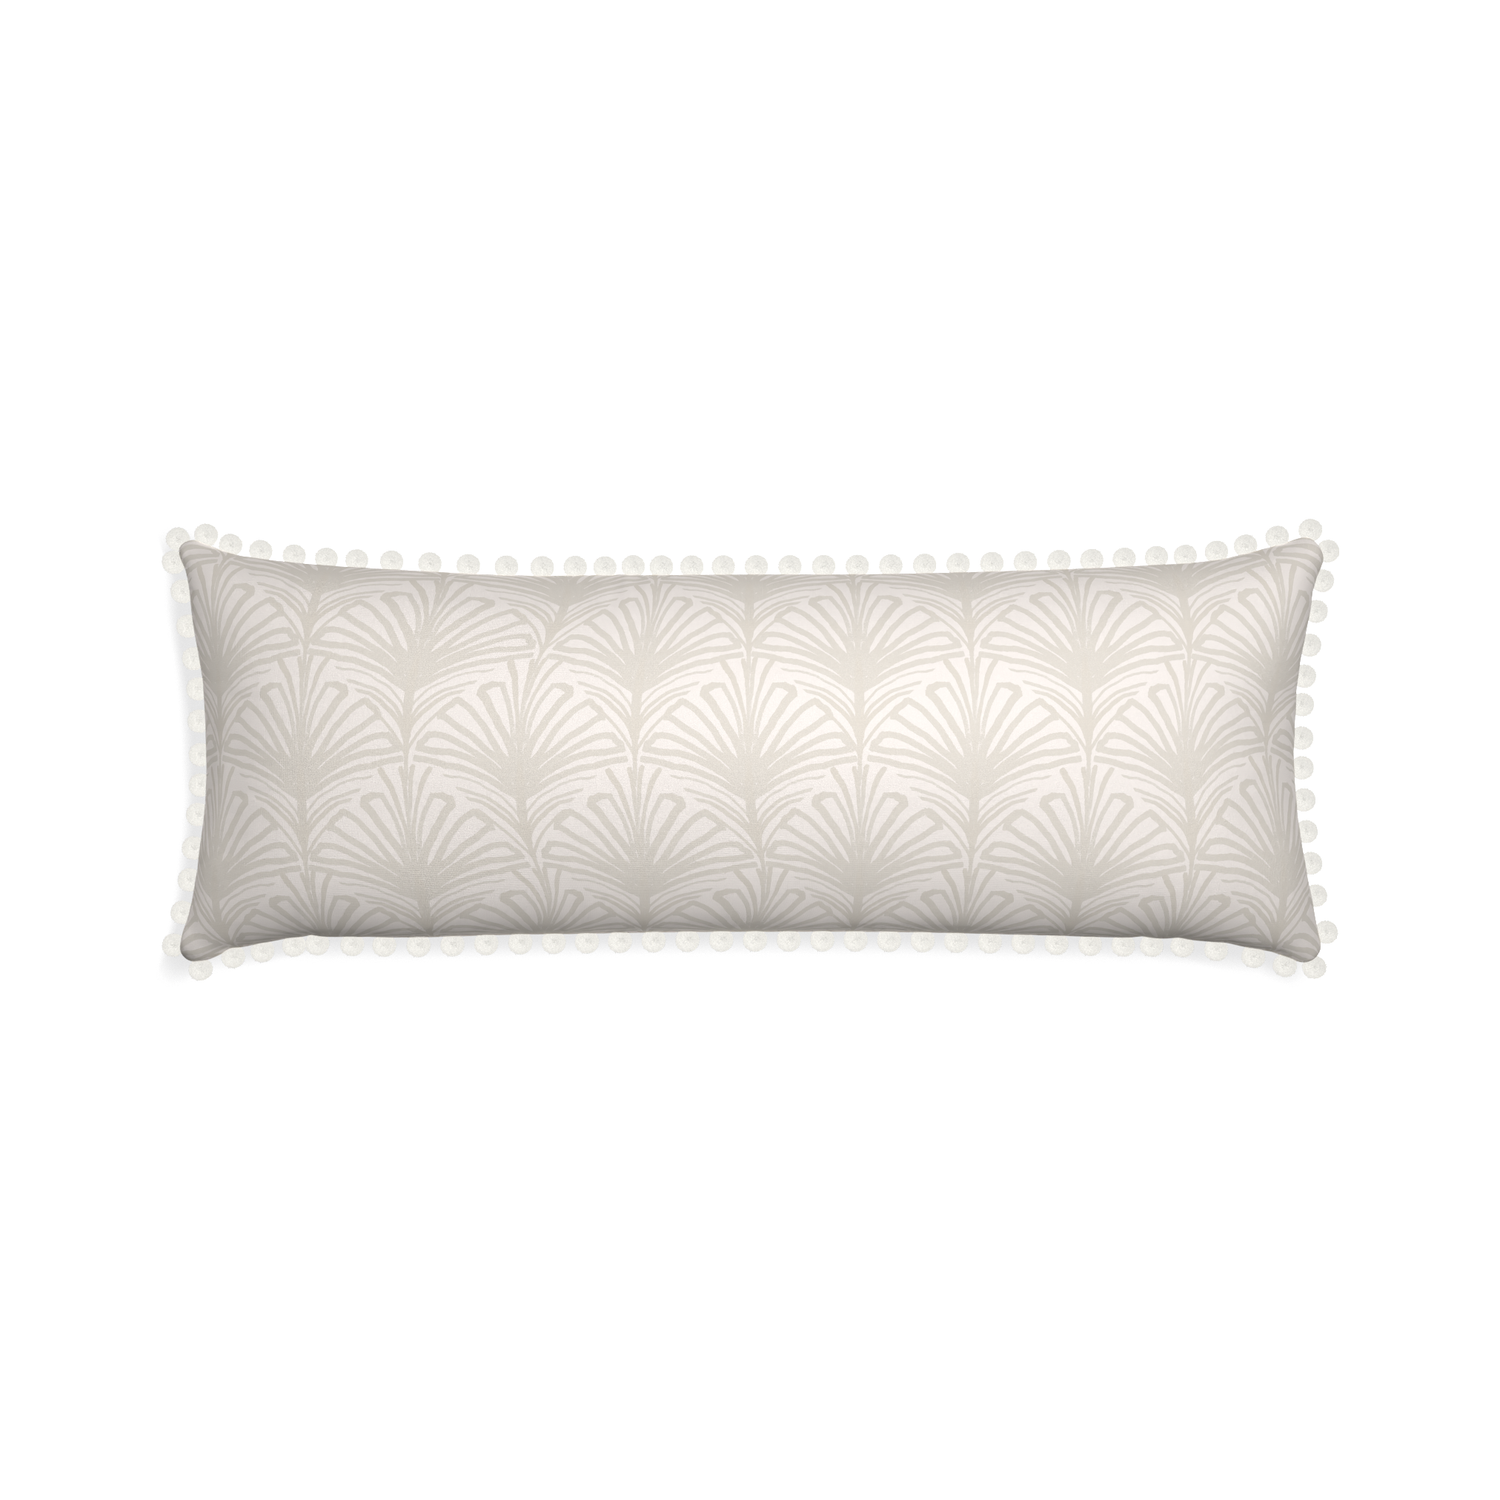 Xl-lumbar suzy sand custom pillow with snow pom pom on white background